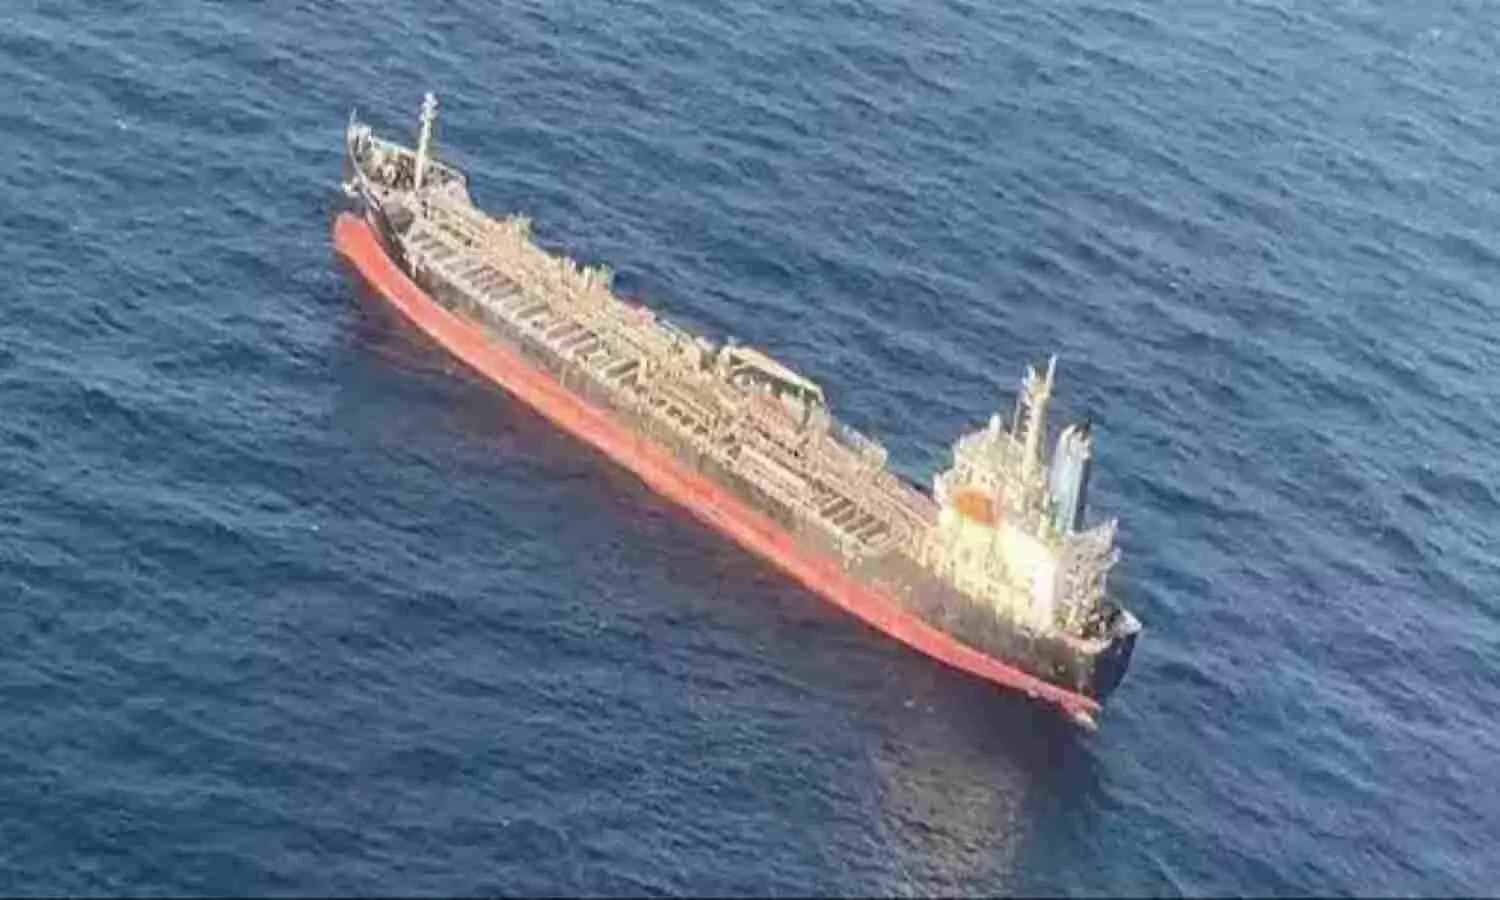 Ship hijacked near Somalia coast